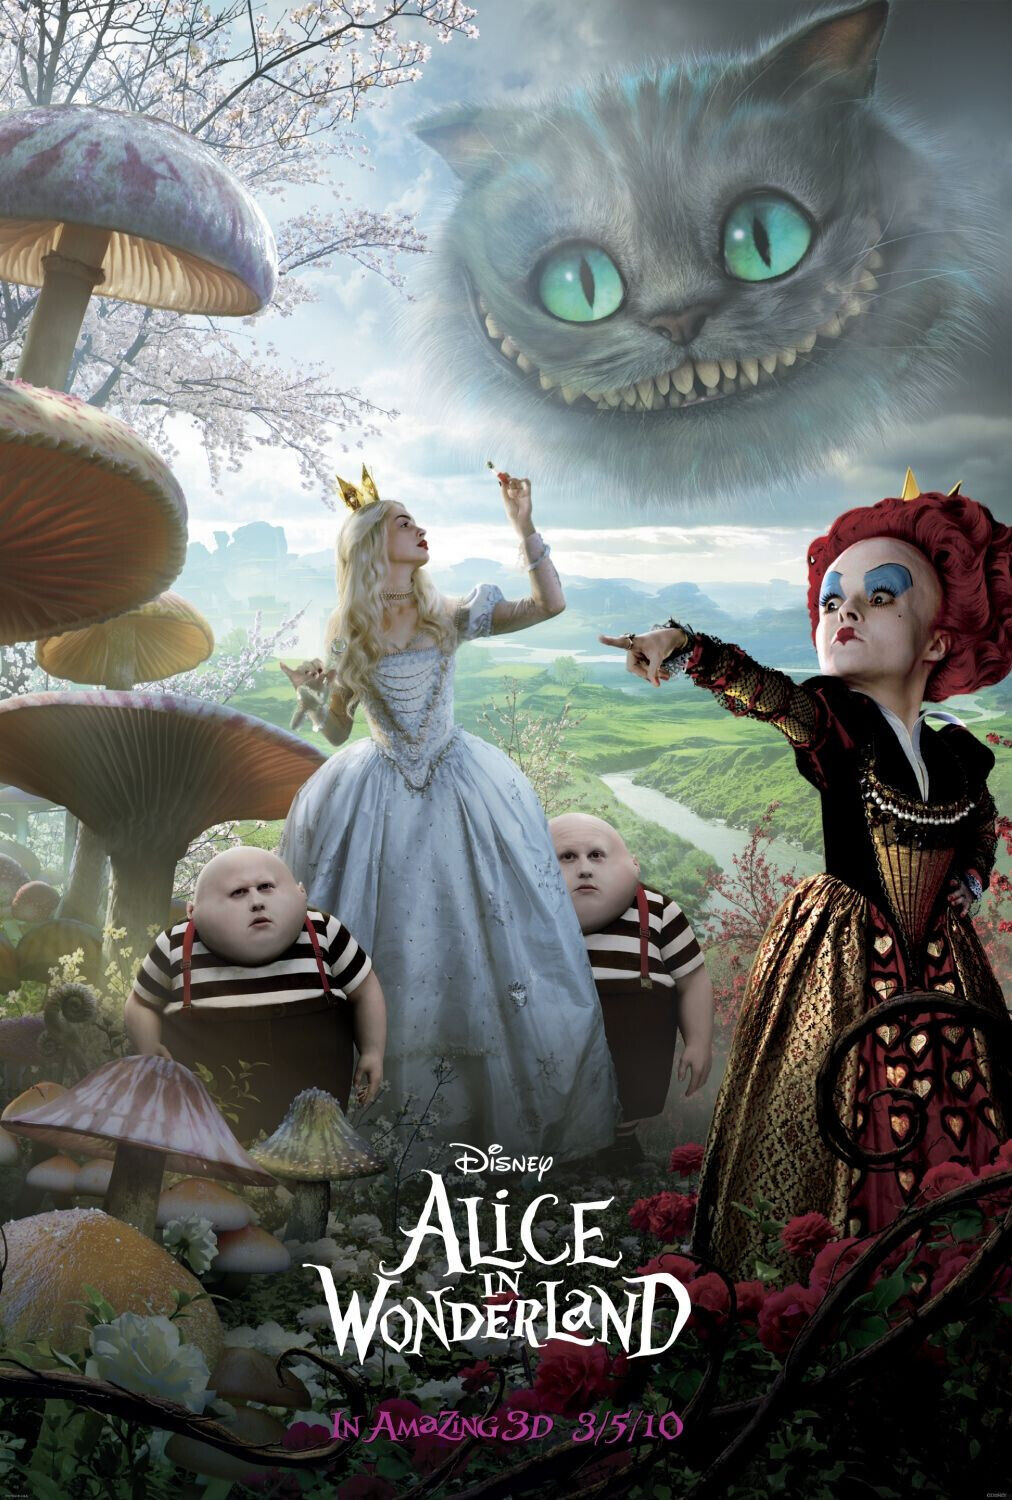 Alice in Wonderland (2010) Movie DVD Box Set New